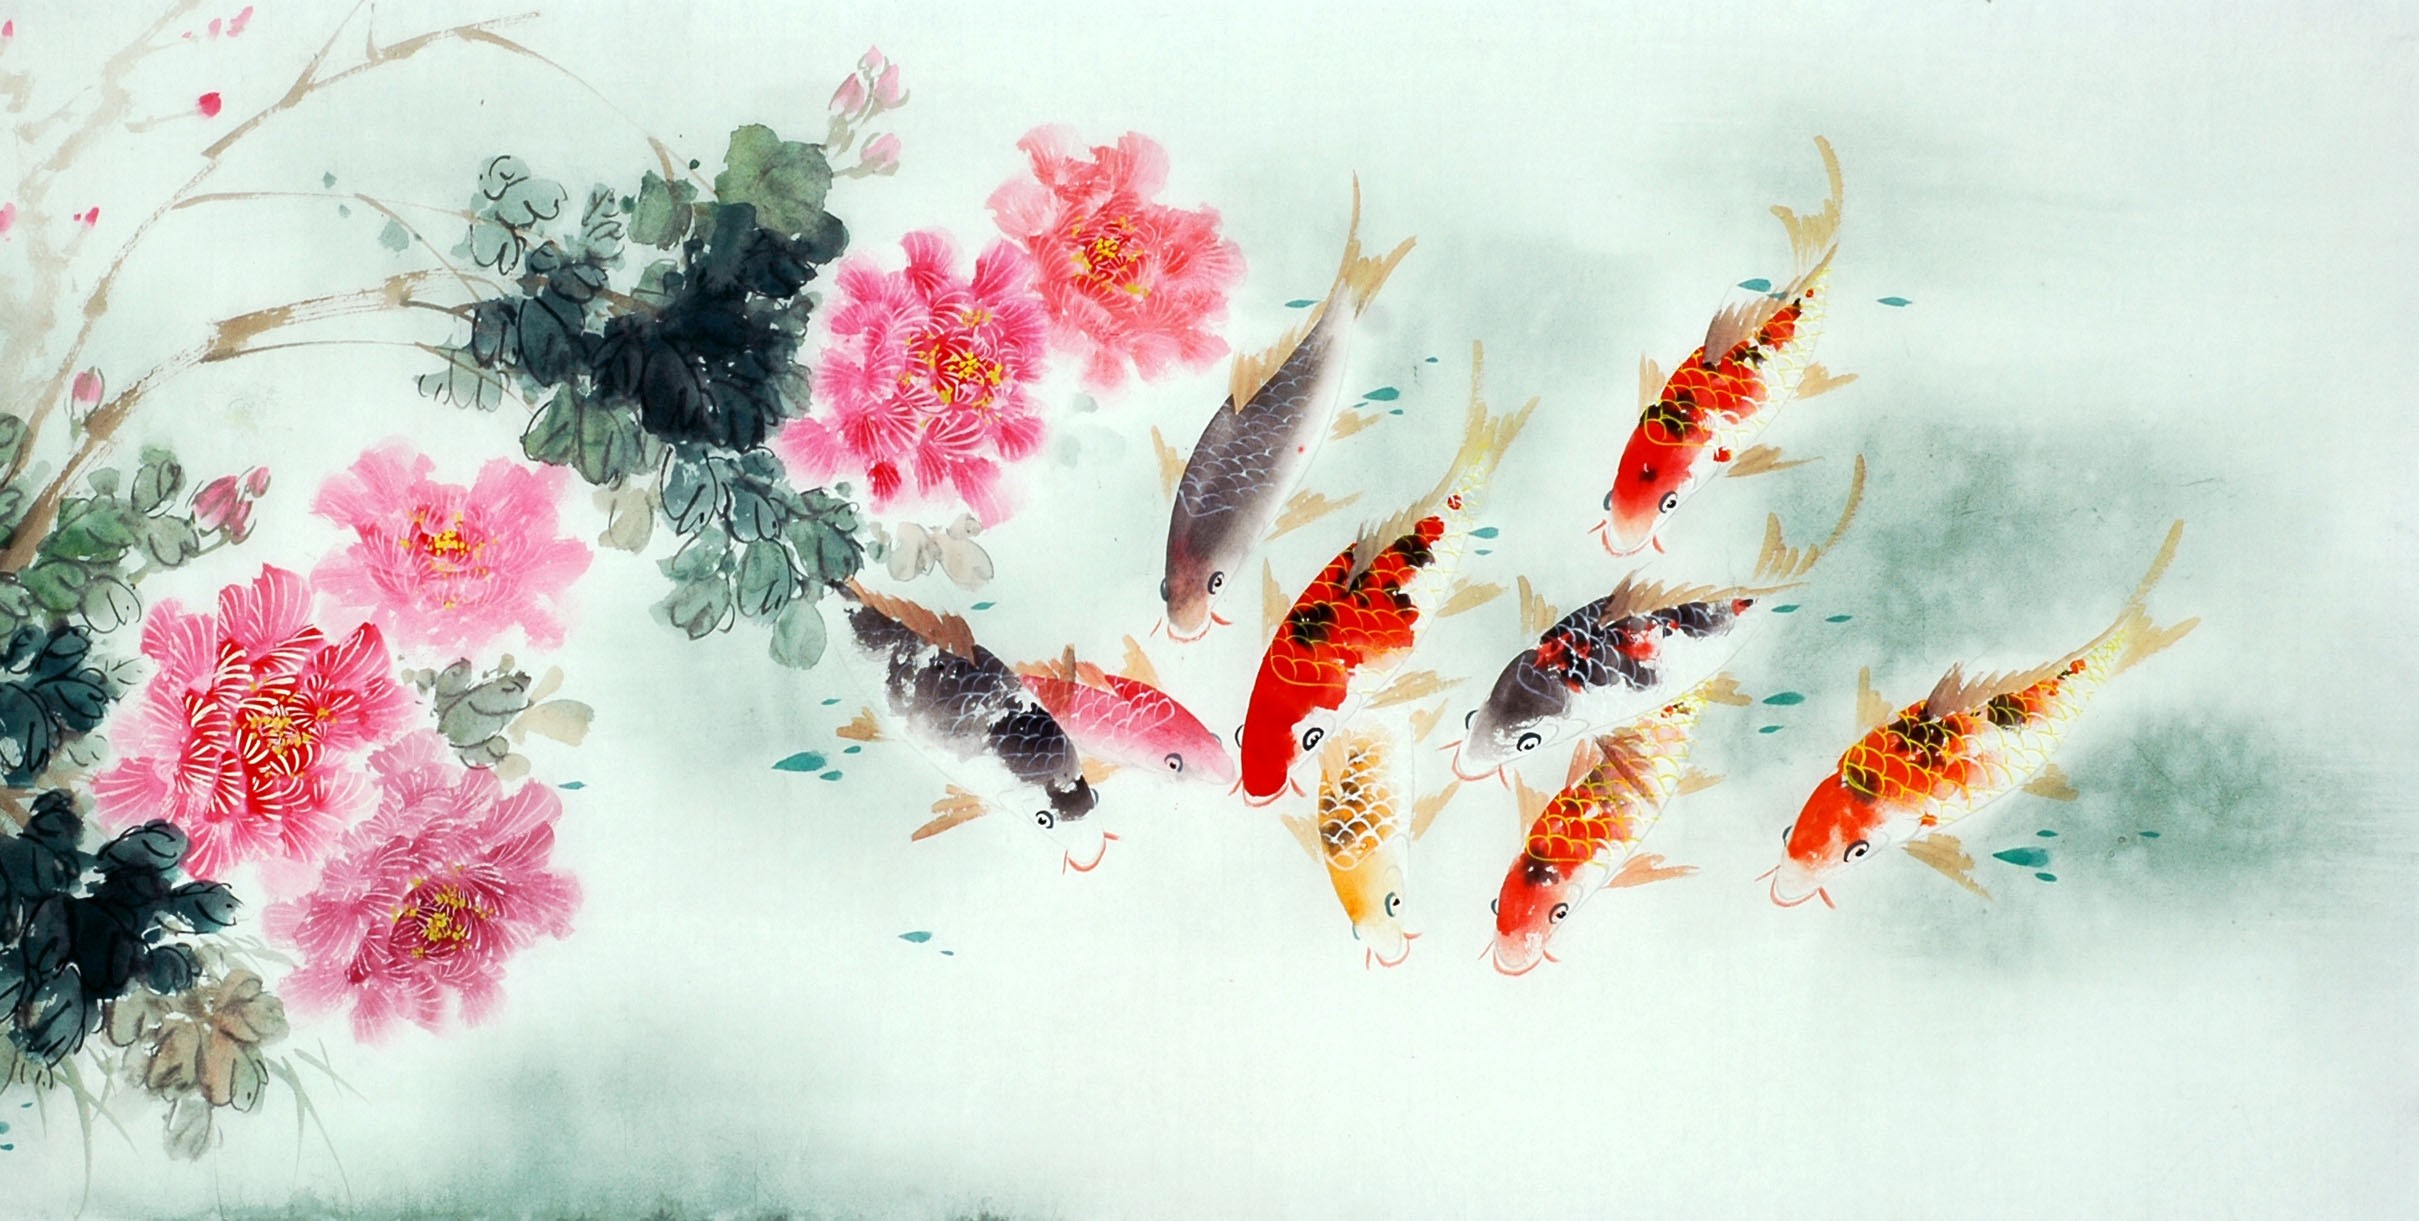 Chinese Carp Painting - CNAG011428